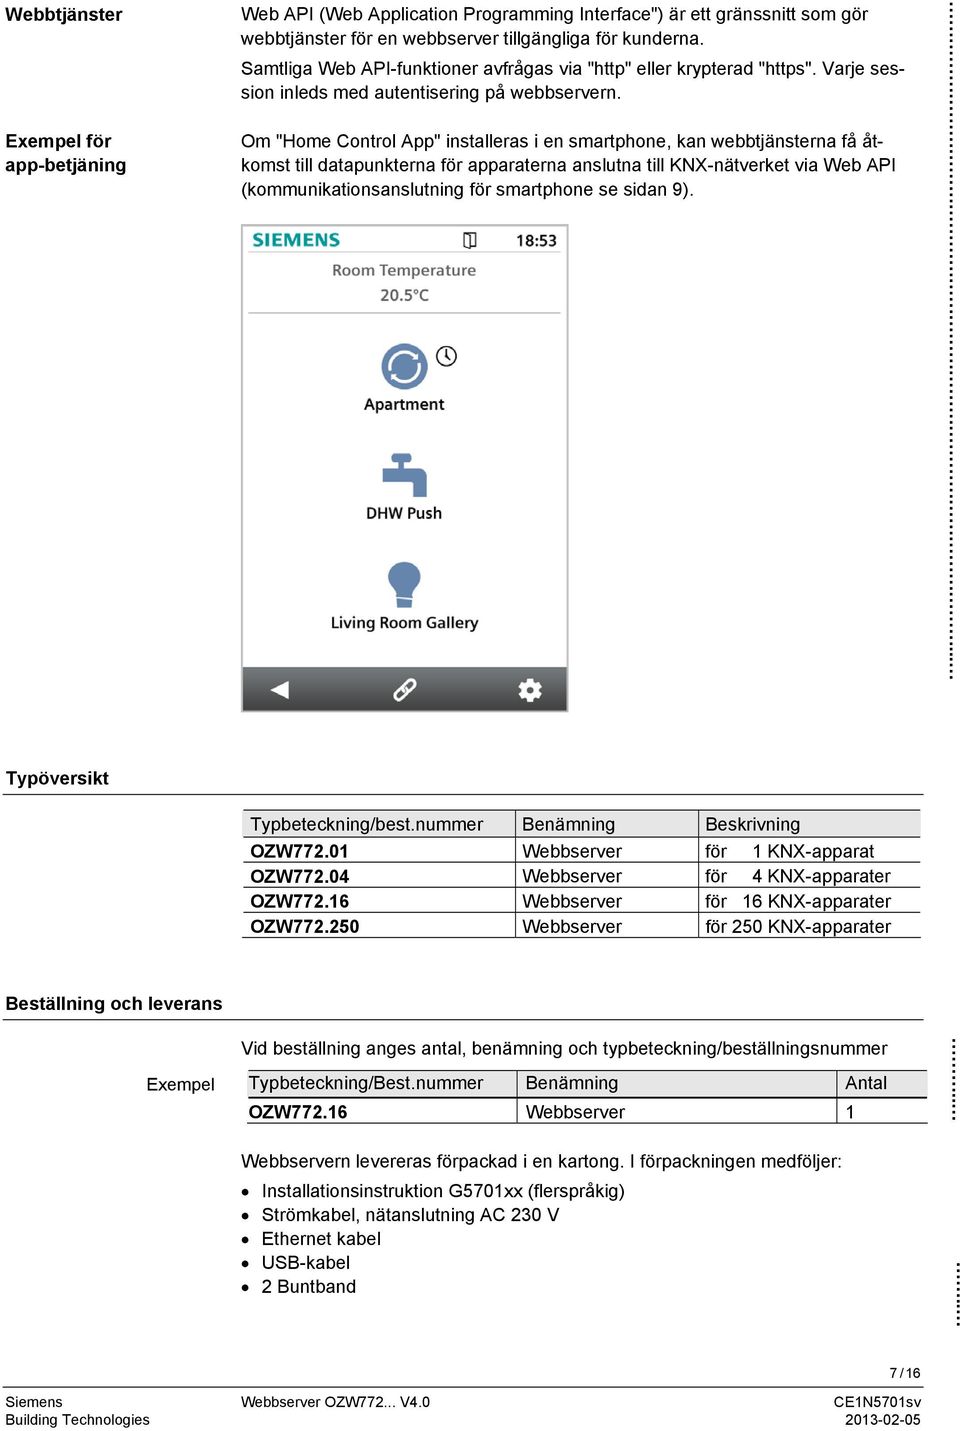 Om "Home Control App" installeras i en smartphone, kan webbtjänsterna få åtkomst till datapunkterna för apparaterna anslutna till KNX-nätverket via Web API (kommunikationsanslutning för smartphone se